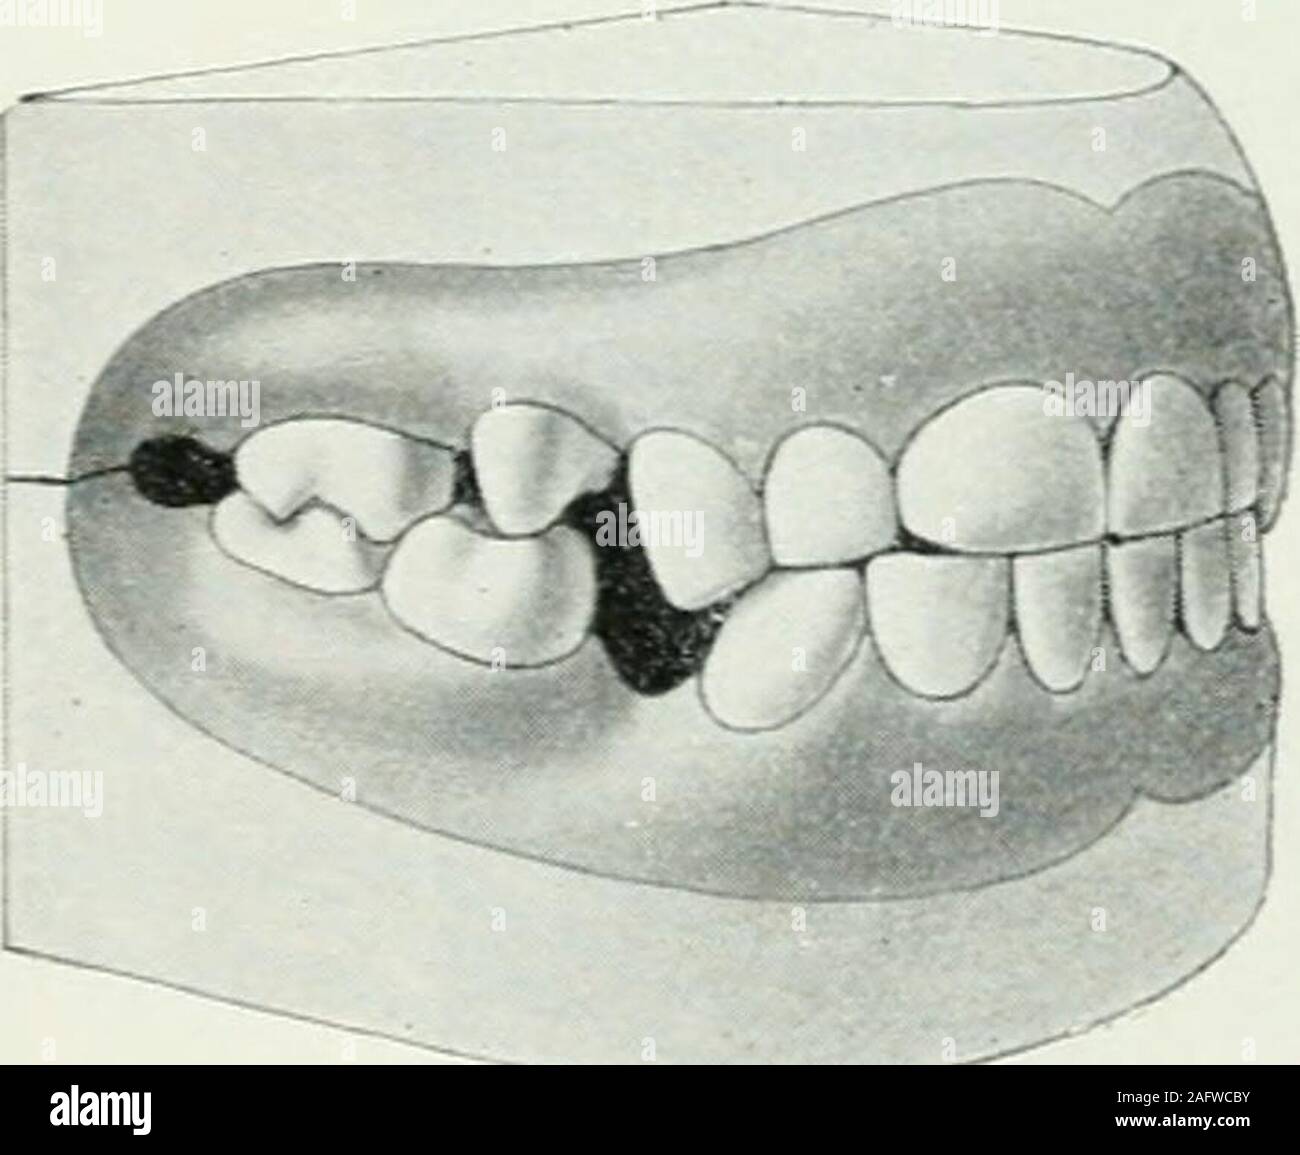 . Lehrbuch der orthodontie fur und studierende enschluss zahnartze mit der Geschichte der orthodontie. Fig. 51 veranschaulicht den unten partiell vorstehenden Biß. Der unten vorstehende Biß total (Fig. 52)-charakteri ist sehr großen siert durch den Oberkiefer Unterkiefer,der weit überragt,und durch anormale Artikulationaller Zähne. Die äußeren Höckerder oberen Prämolarenartikulieren Molaren und mit den inneren Hök-kern.Auch der Unteren gleichnamigen beißen alle unteren Zähne umetwa drei Viertel Molarenbreite zuFl§- 53- ) weit nach vorne. Der Aufbiß (Fig. 53), daßdie gekennzeichnet dadurch ist Foto de stock